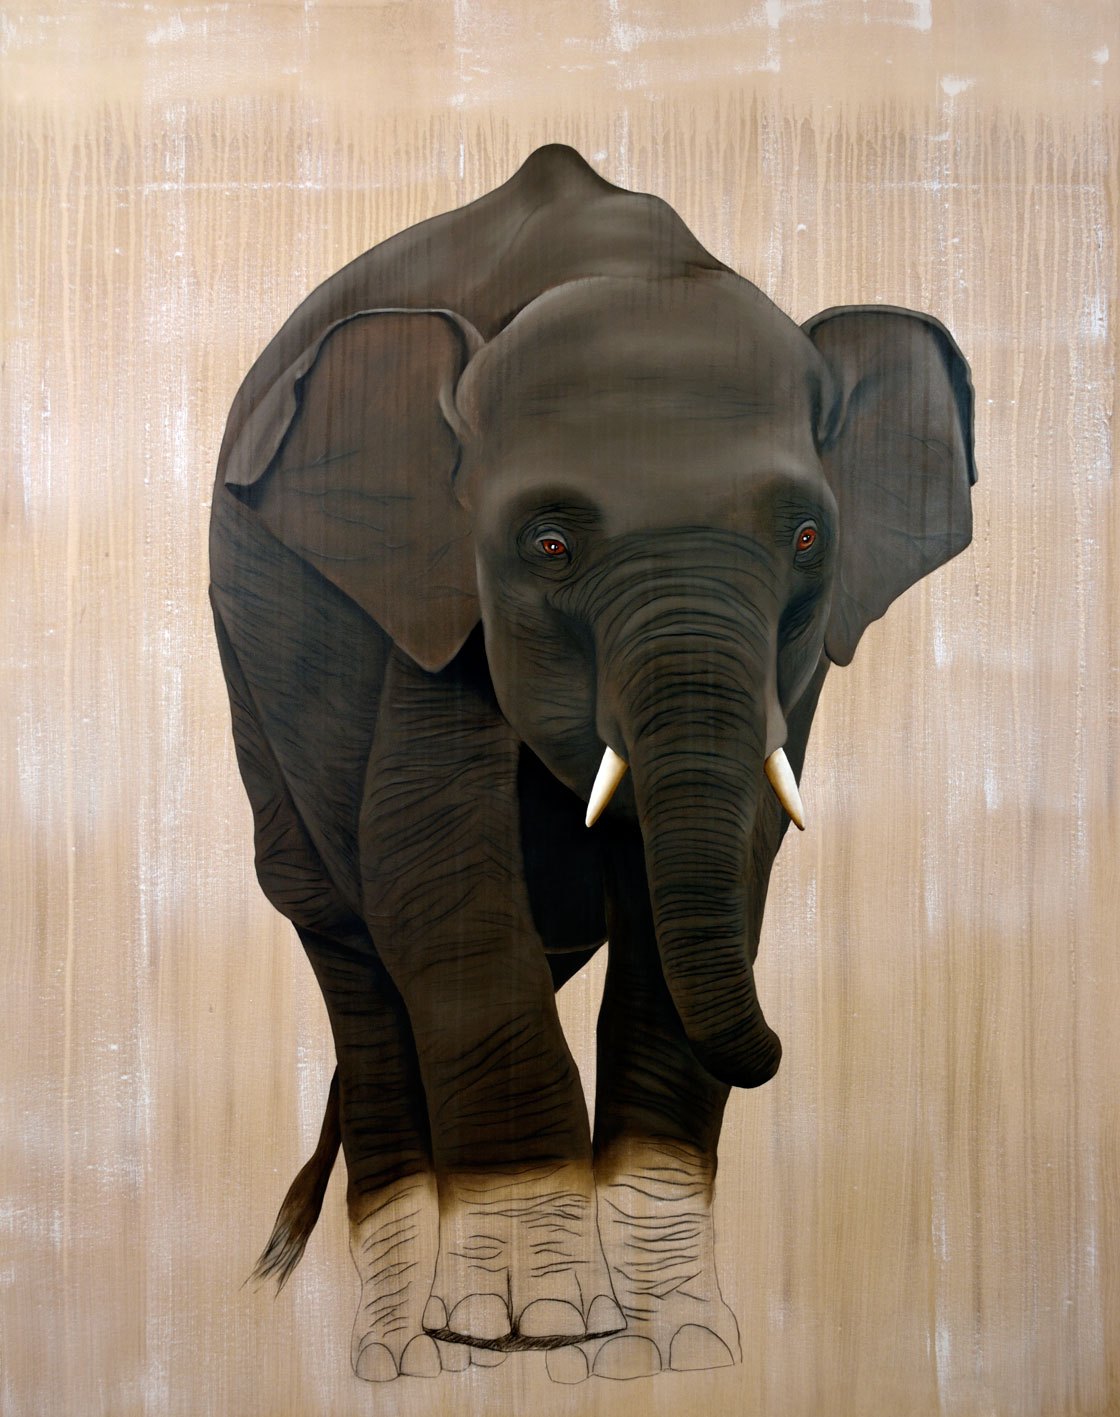 ELEPHAS MAXIMUS elephas-maximus-éléphanteau-asie-delete-extinction-protégé-disparition- Thierry Bisch artiste peintre contemporain animaux tableau art décoration biodiversité conservation 